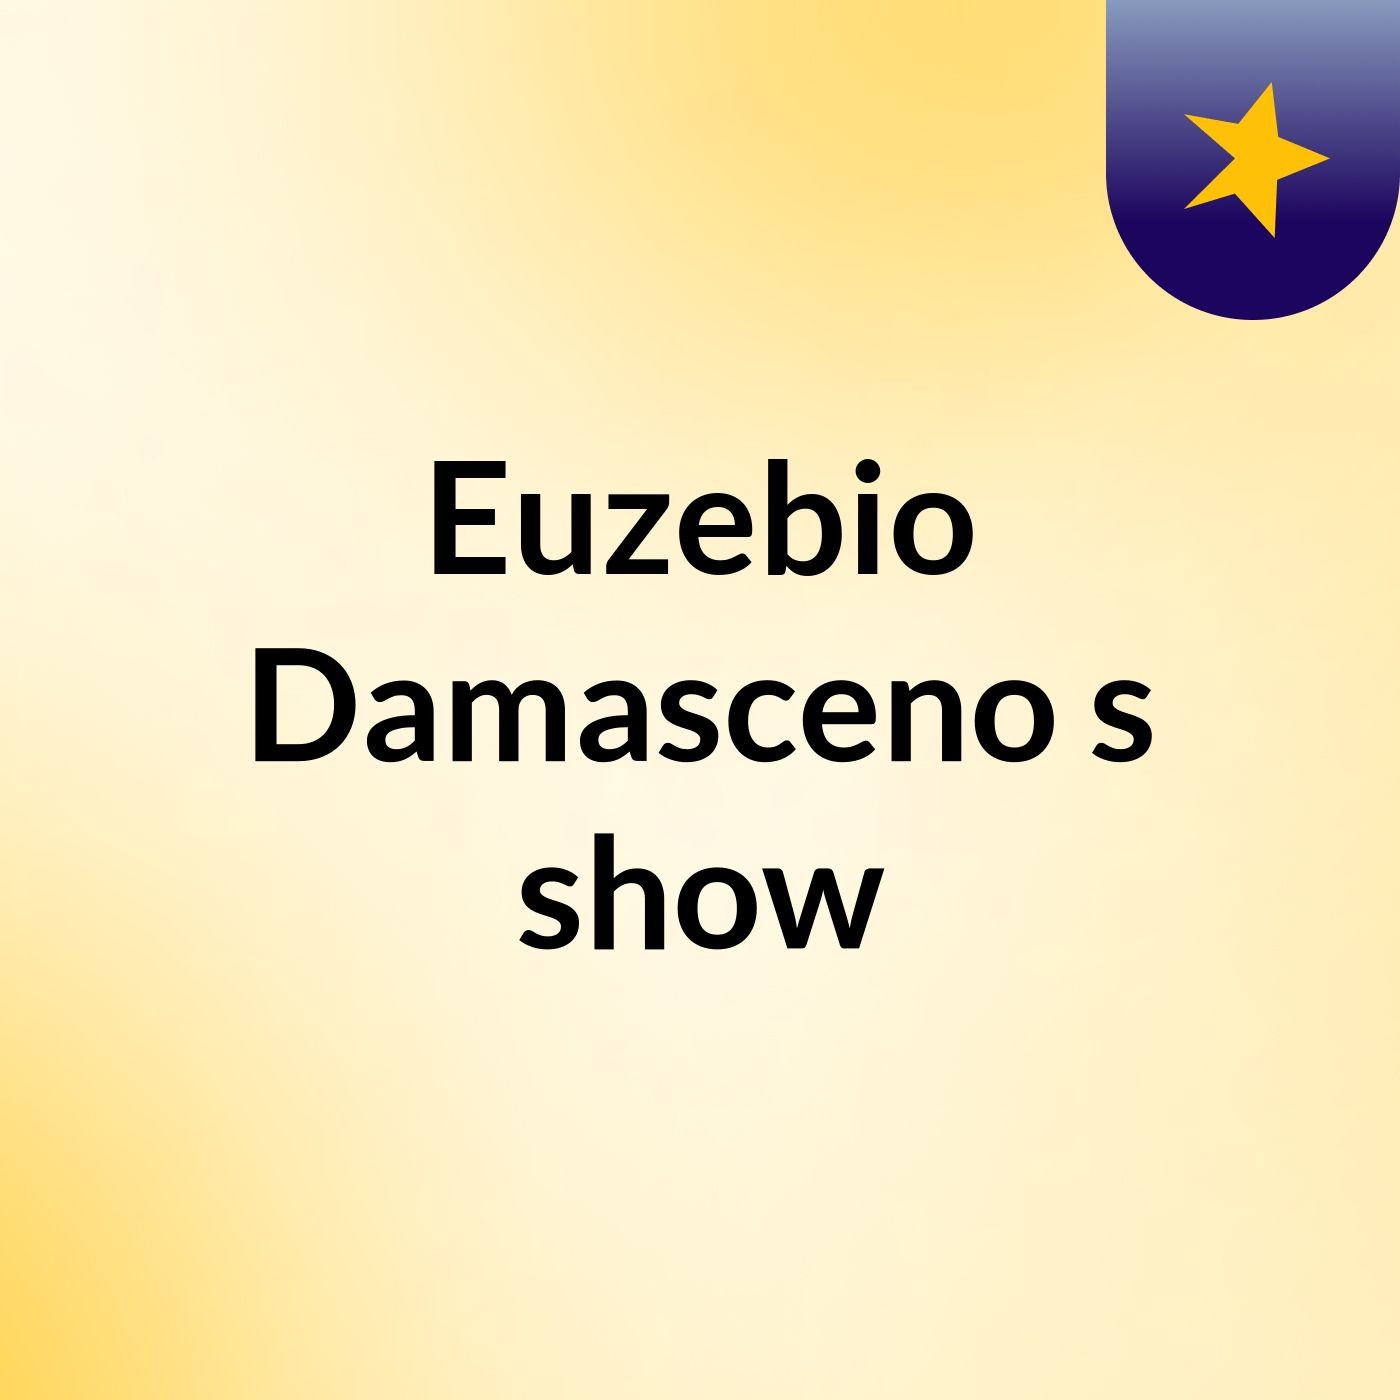 Euzebio Damasceno's show